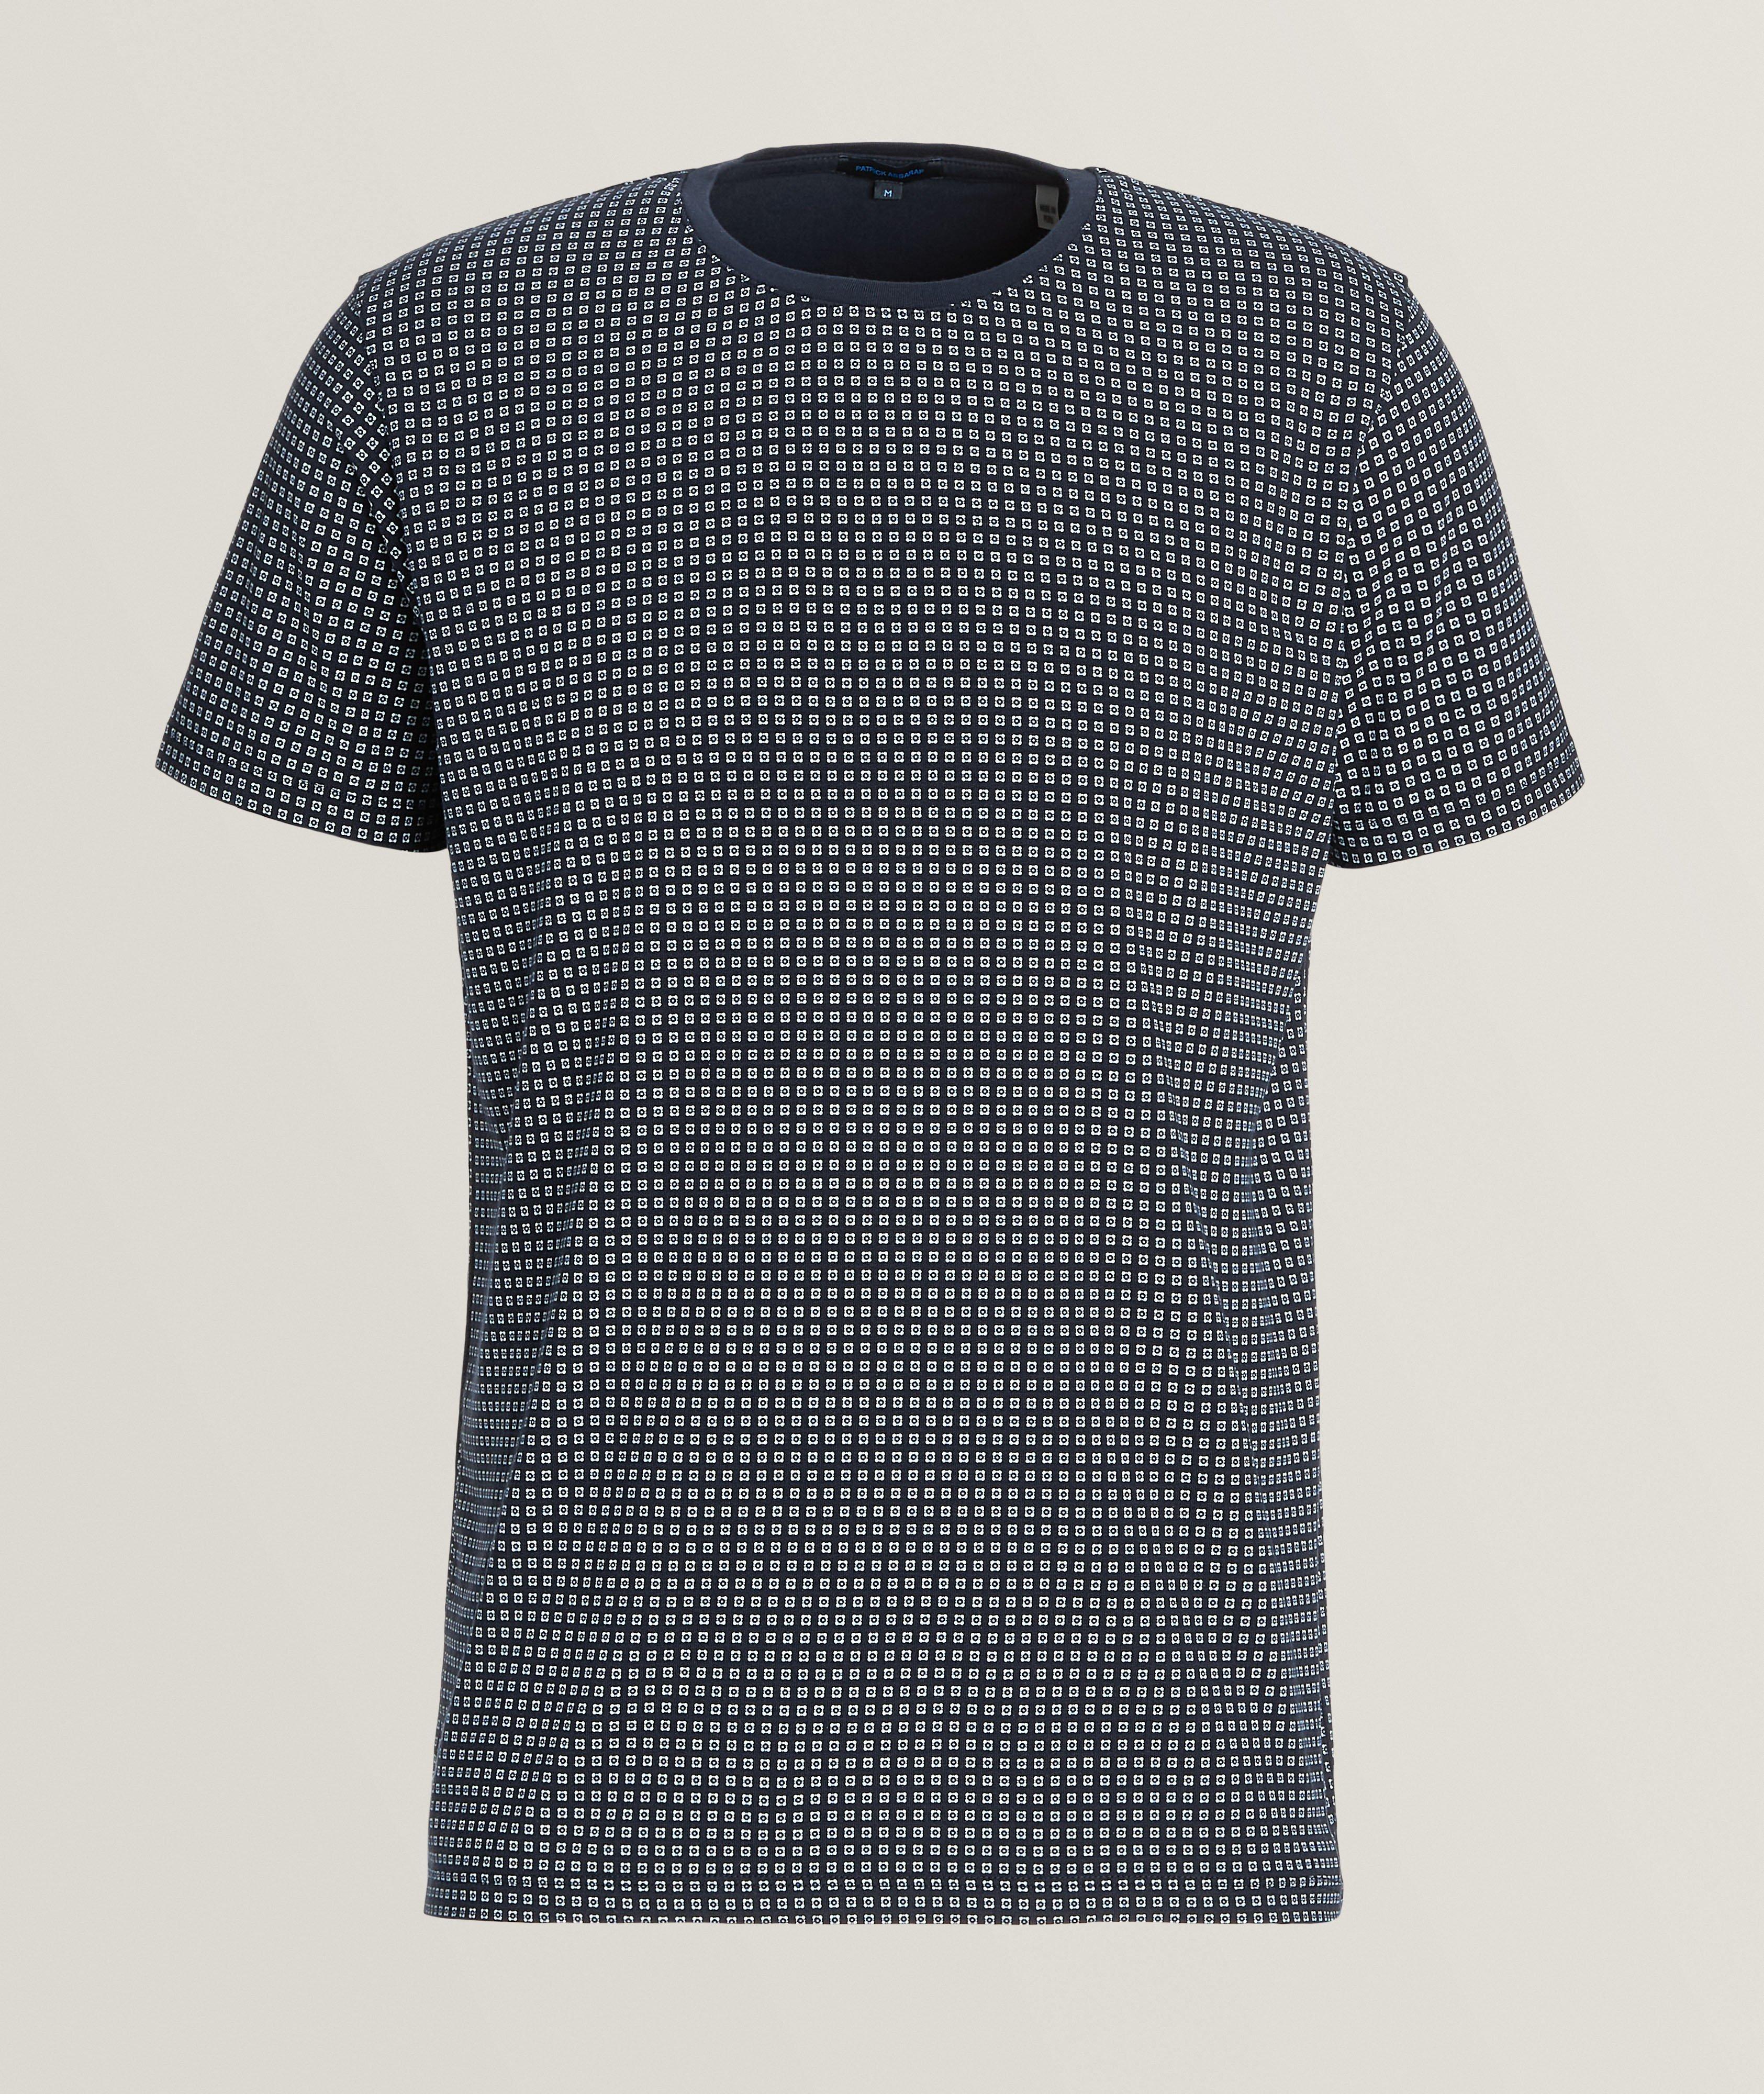 T-shirt en coton pima extensible à motif répété image 0